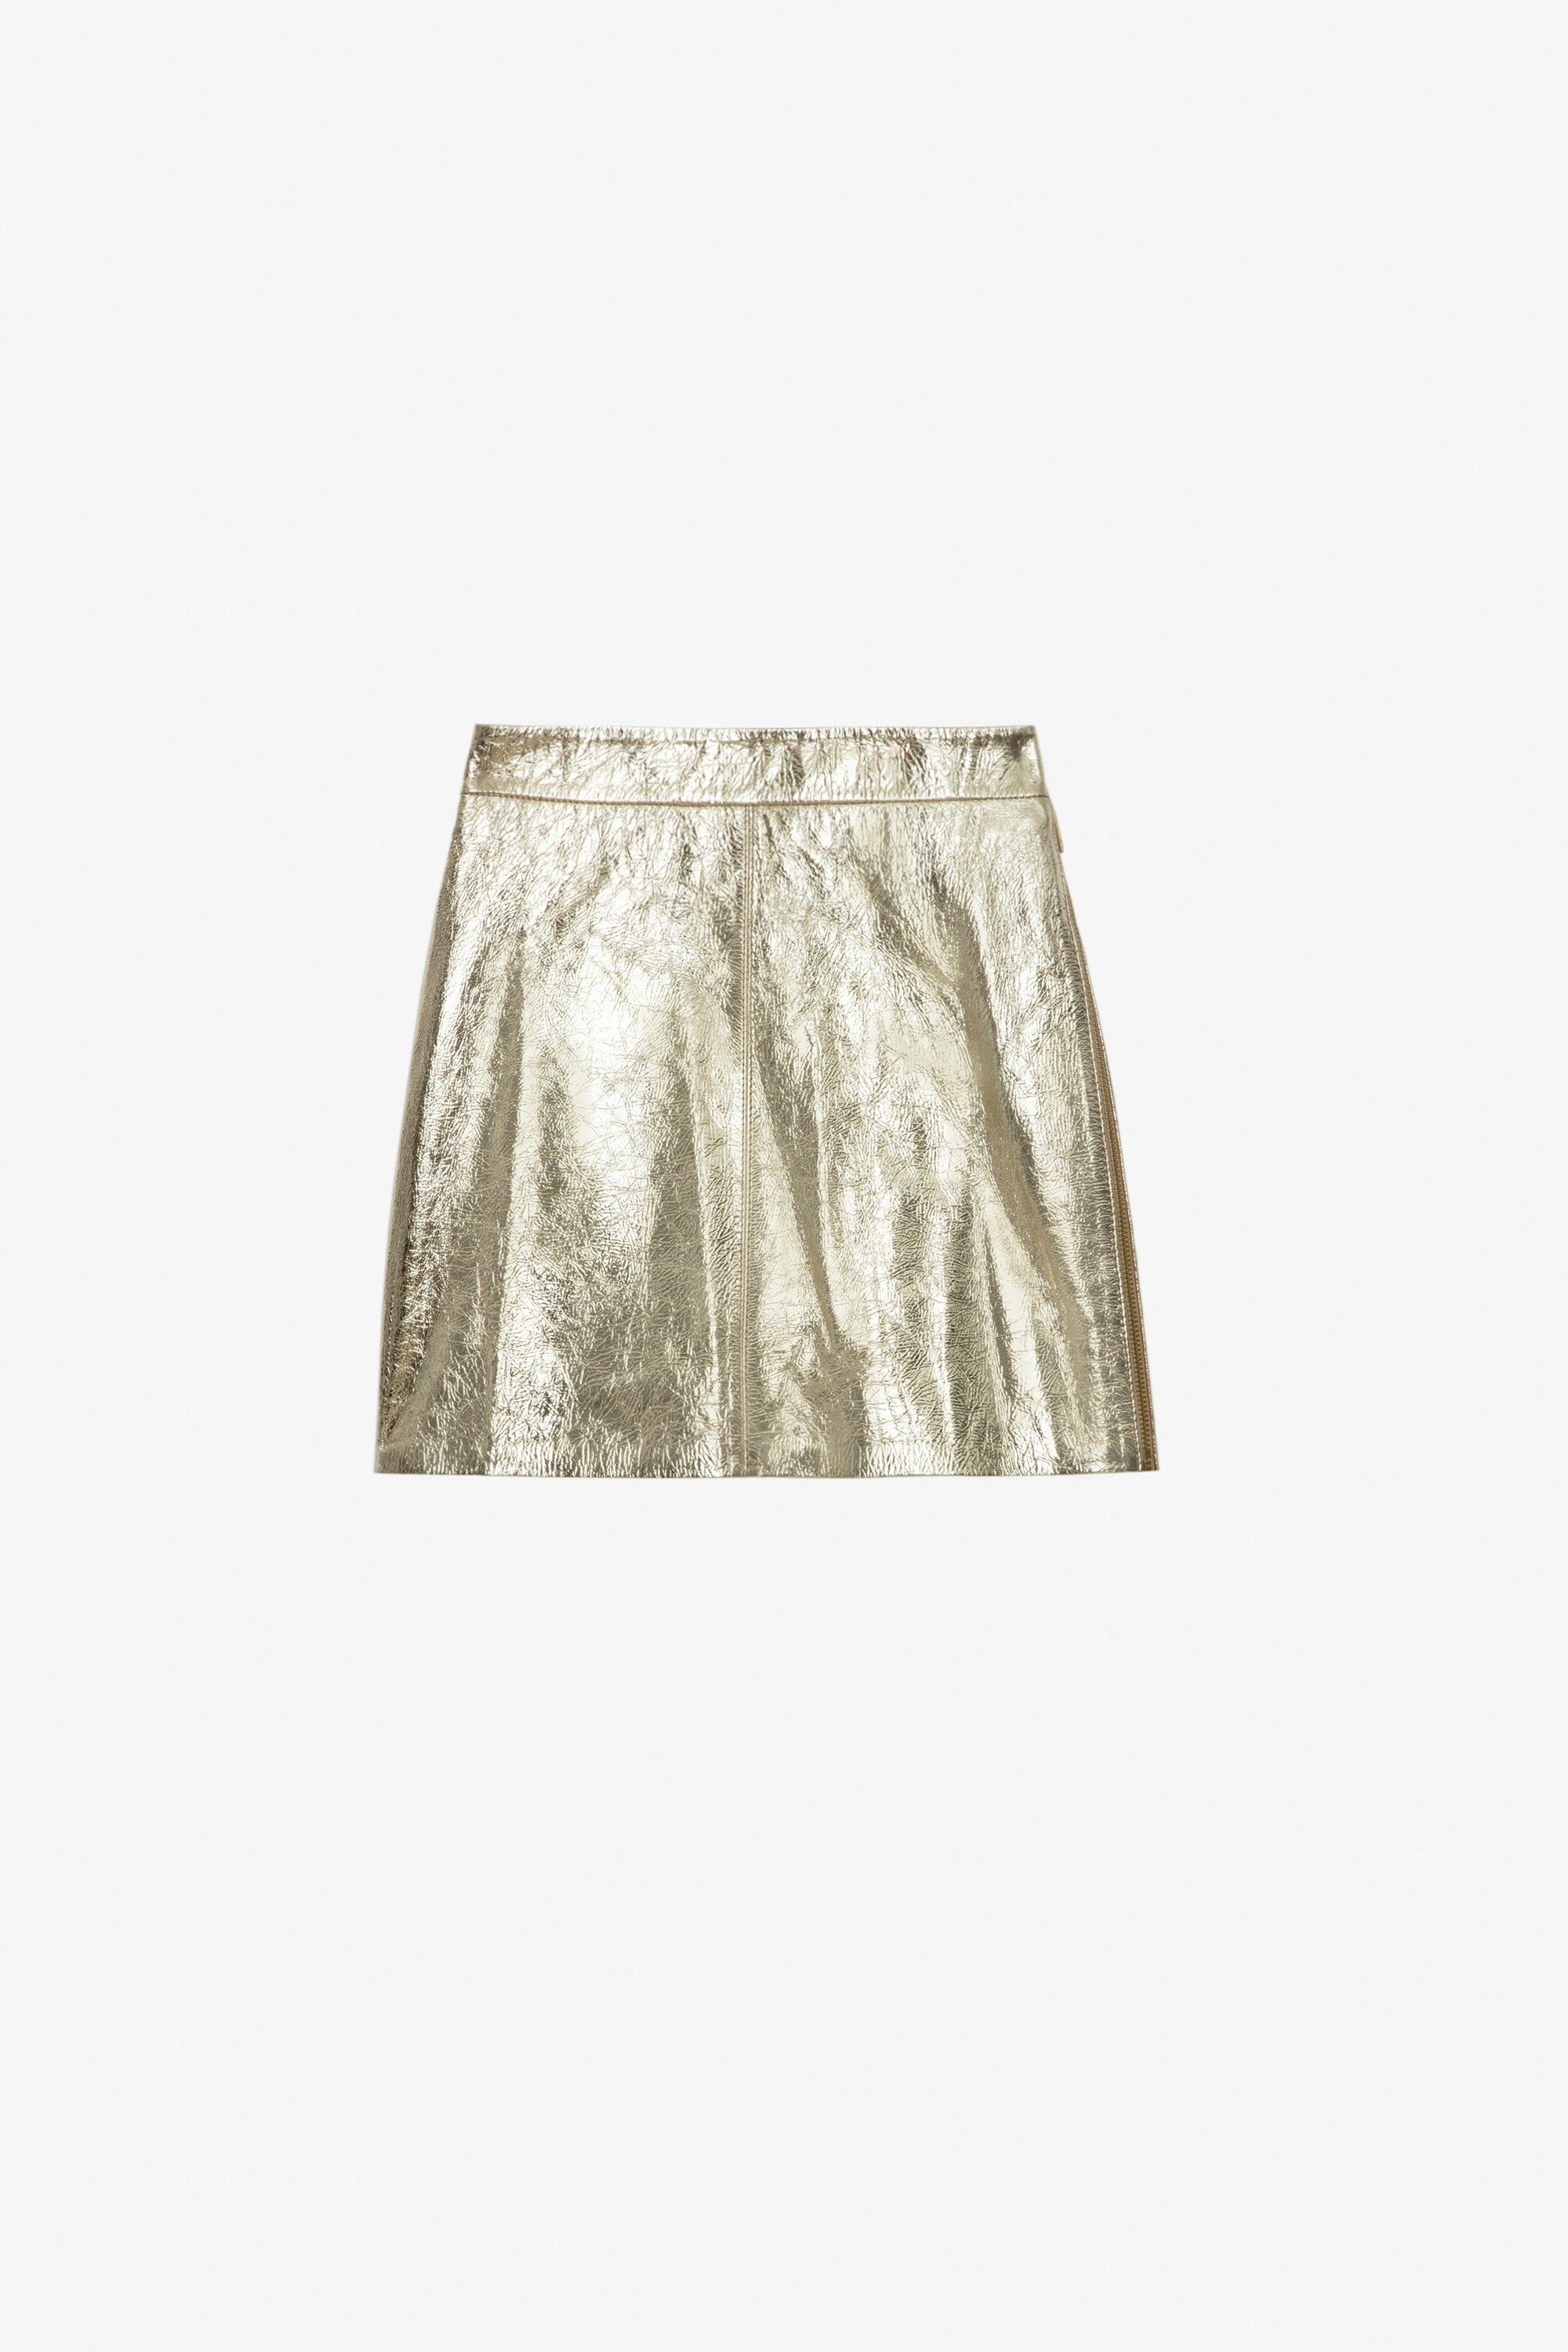 Falda de Piel Jinette - Falda corta de piel metalizada dorada con cremallera.